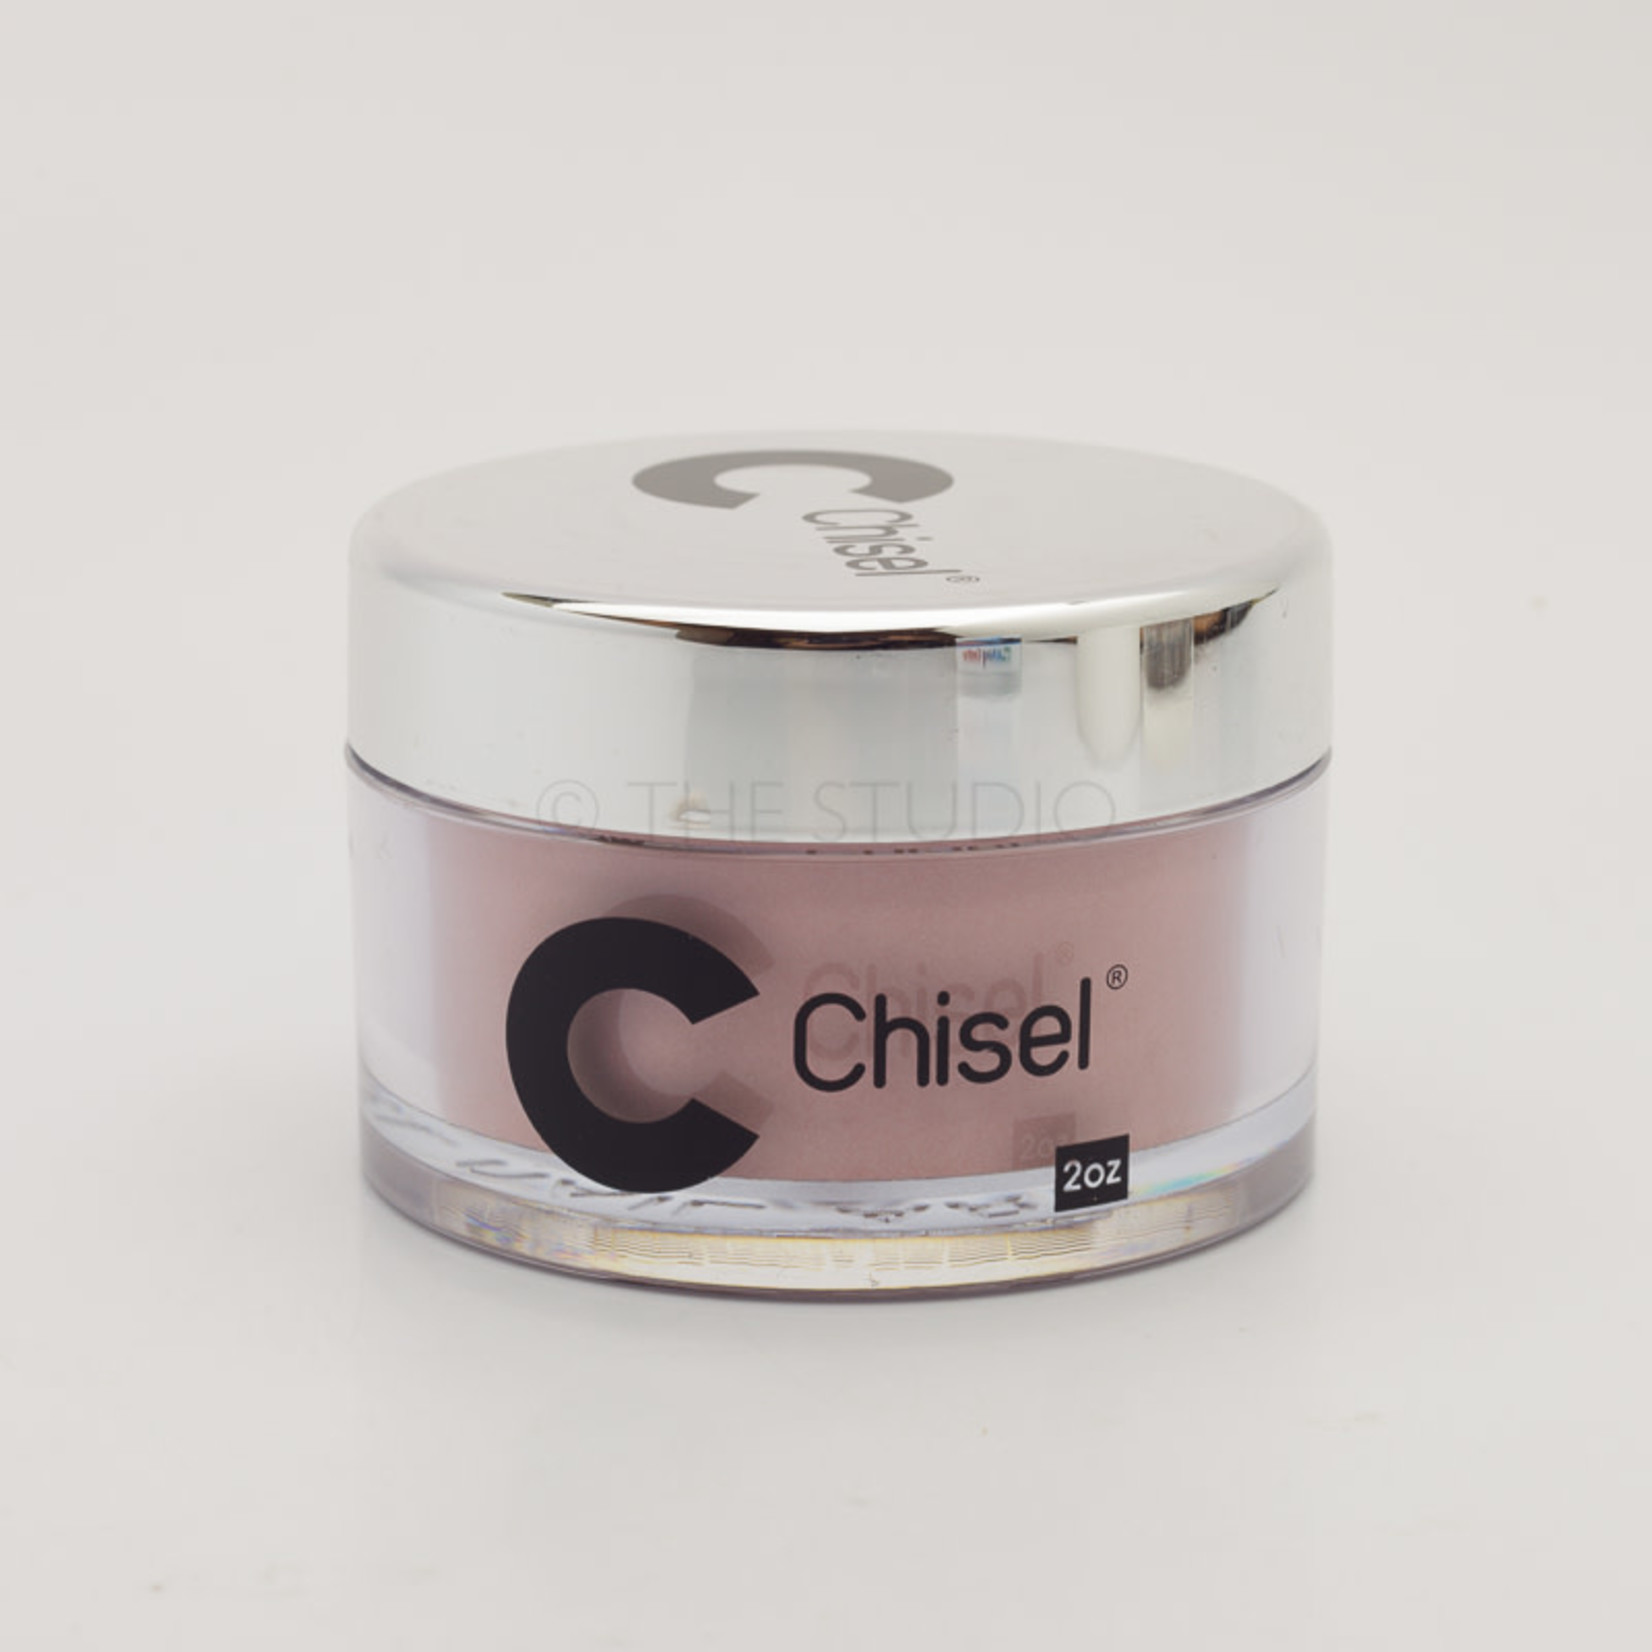 Chisel Chisel - Solid 018 - AIO Powder - 2 oz